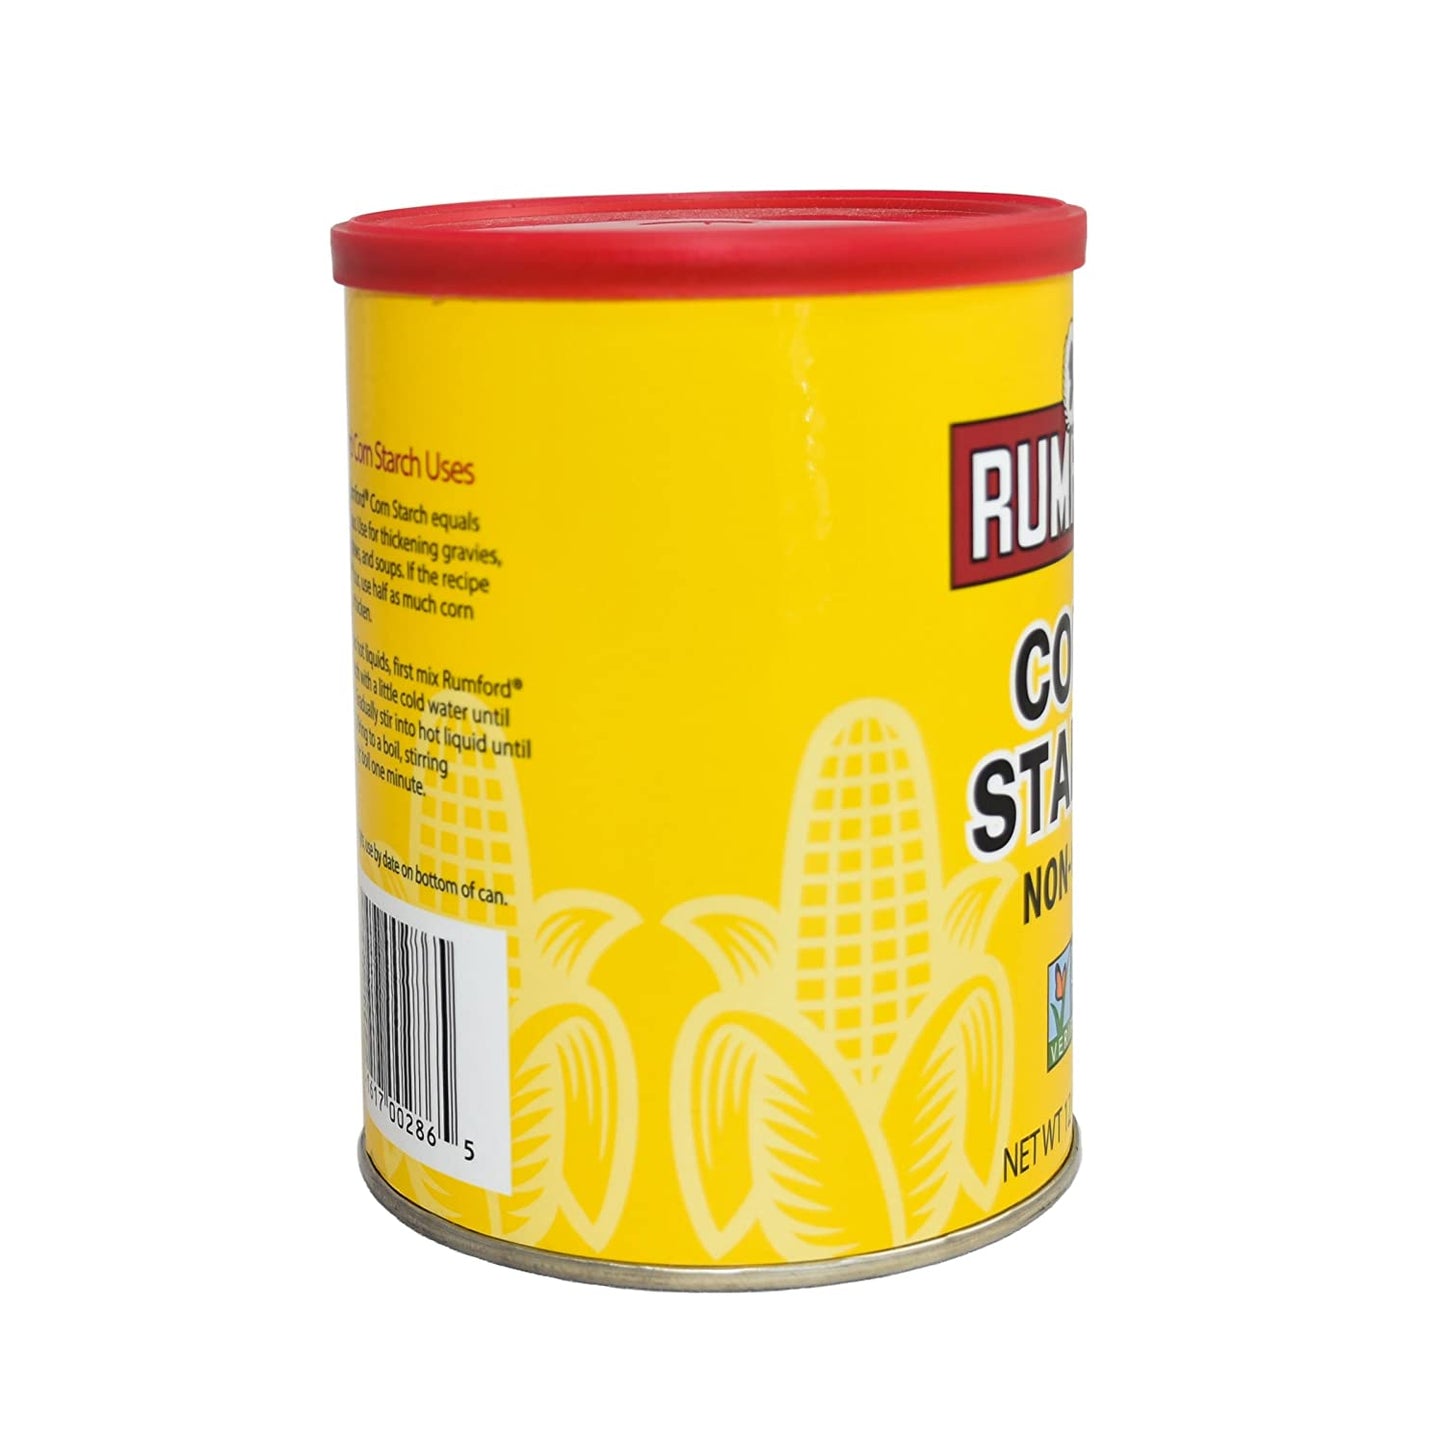 Rumford Non-Gmo Corn Starch, 12 Ounce